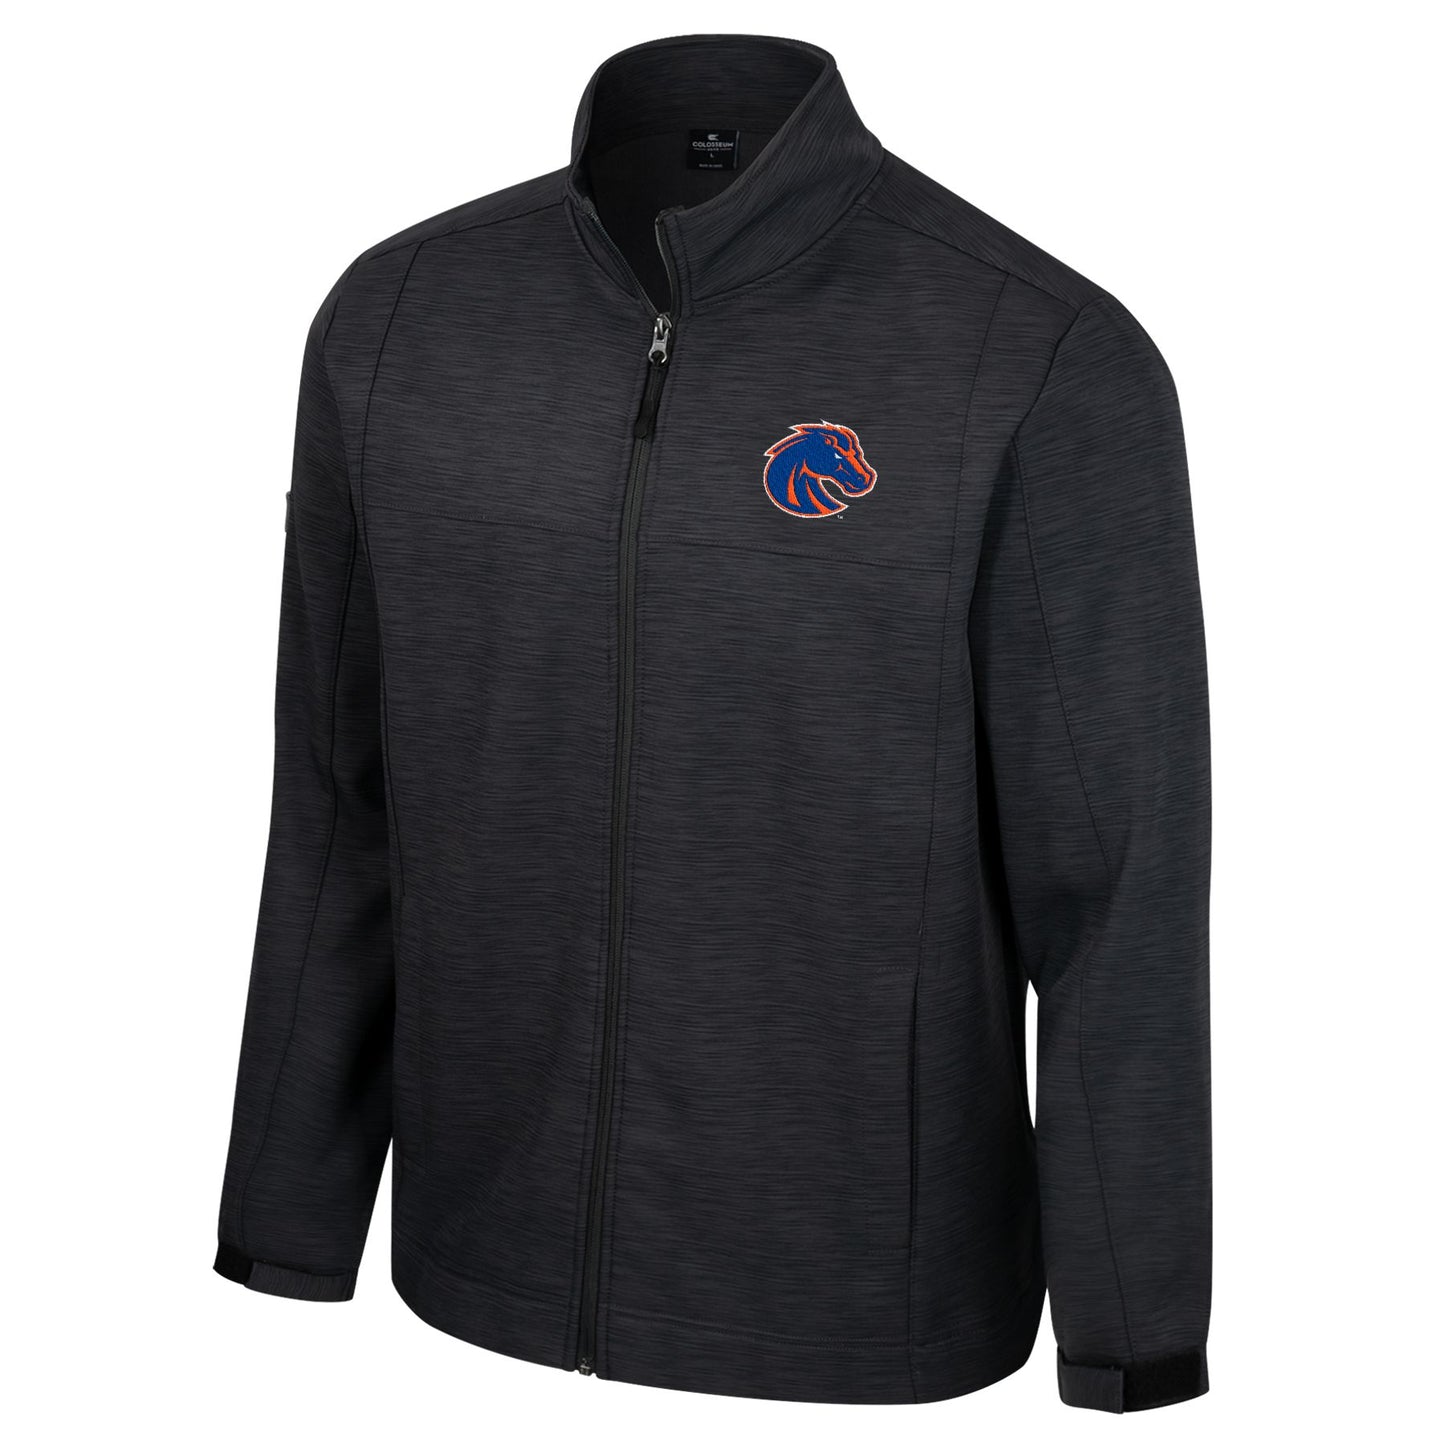 Boise State Broncos Colosseum Men's Full Zip Jacket (Black)